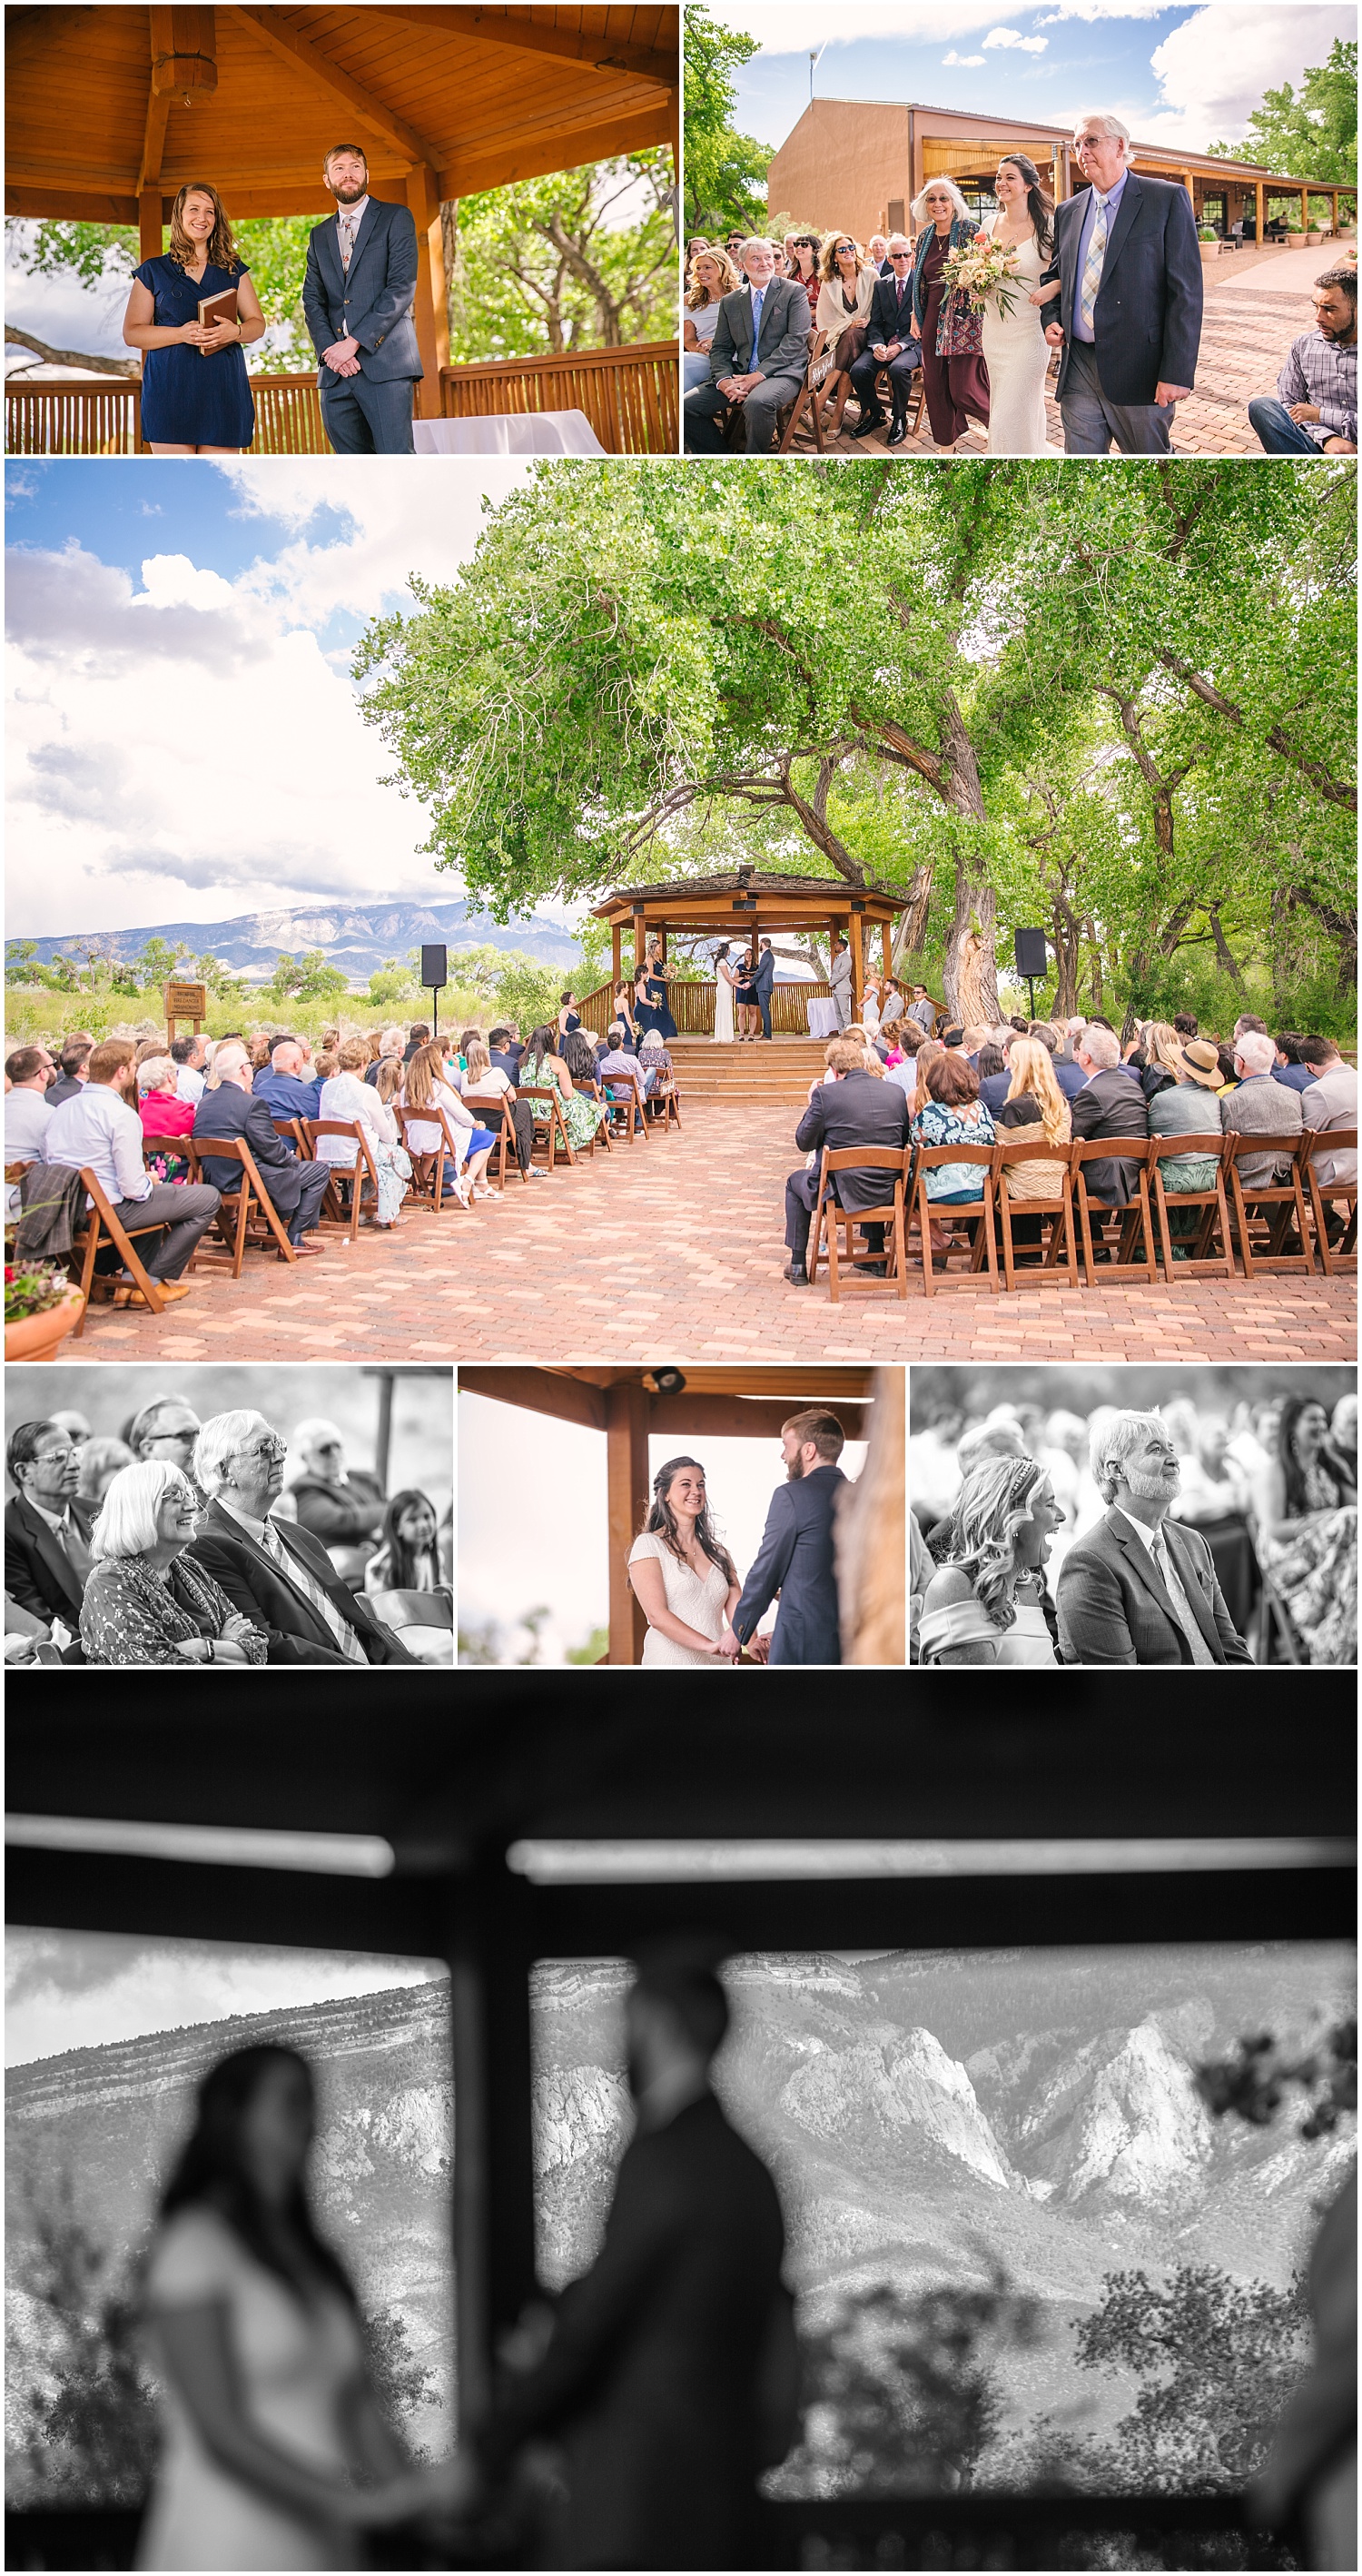 Hyatt Regency Tamaya wedding ceremony at Cottonwoods Gazebo in New Mexico